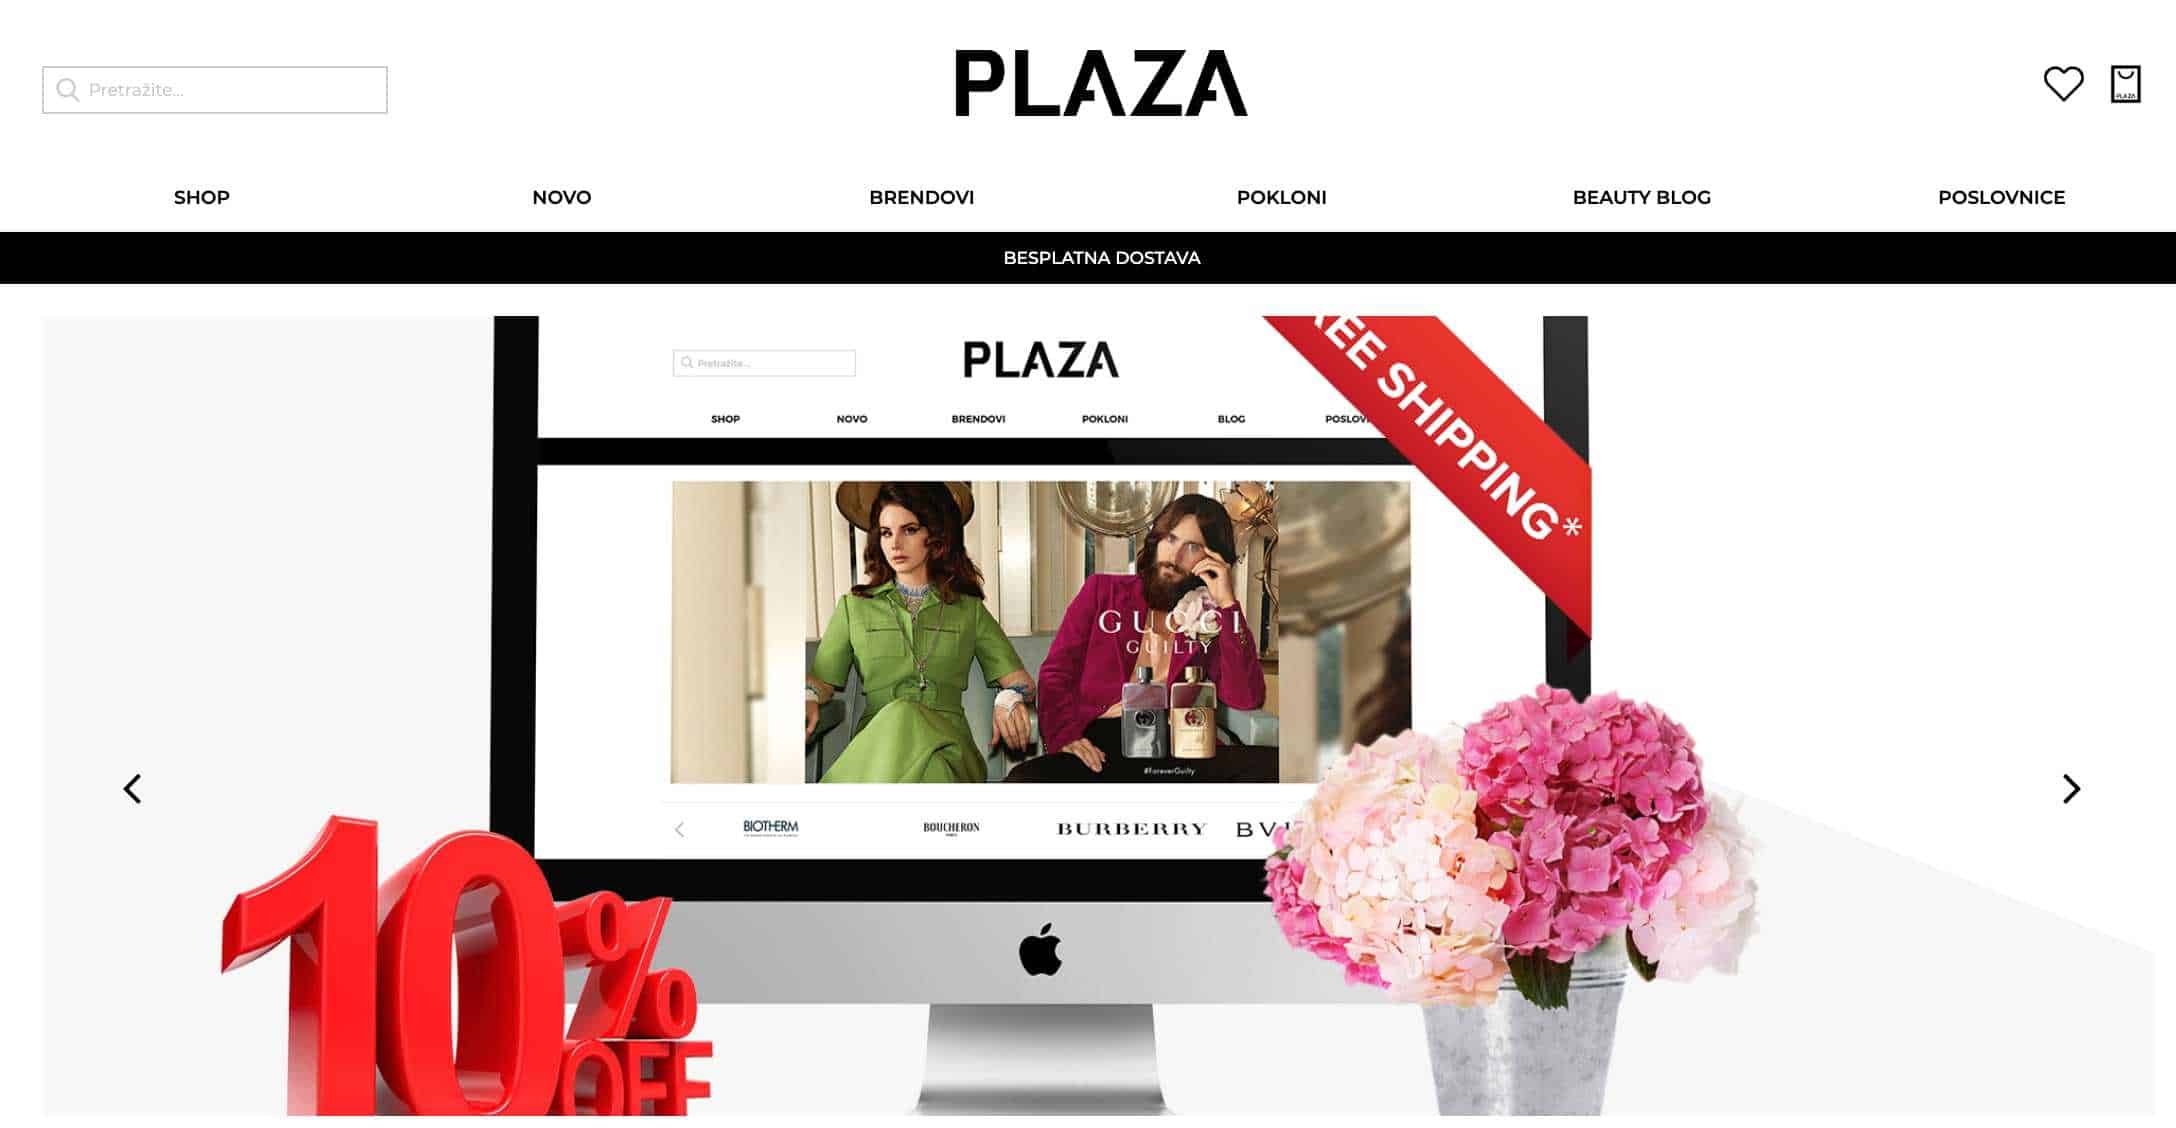 parfimerija plaza. online kupovina. korona virus